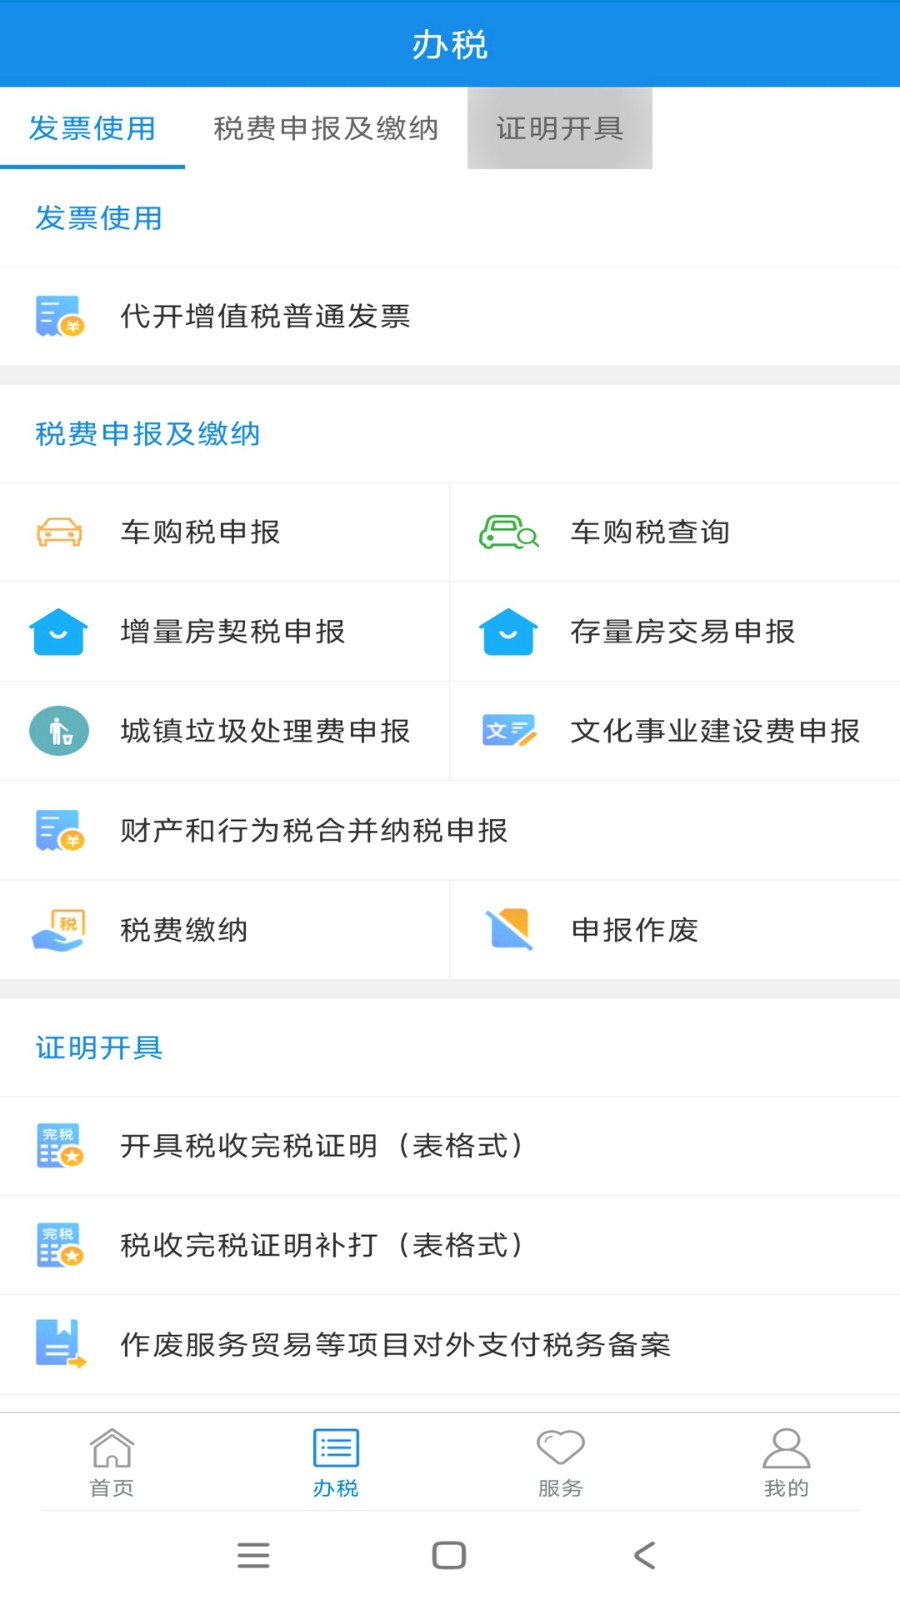 新疆税务电子税务局手机版 v3.38.0 官方安卓版1